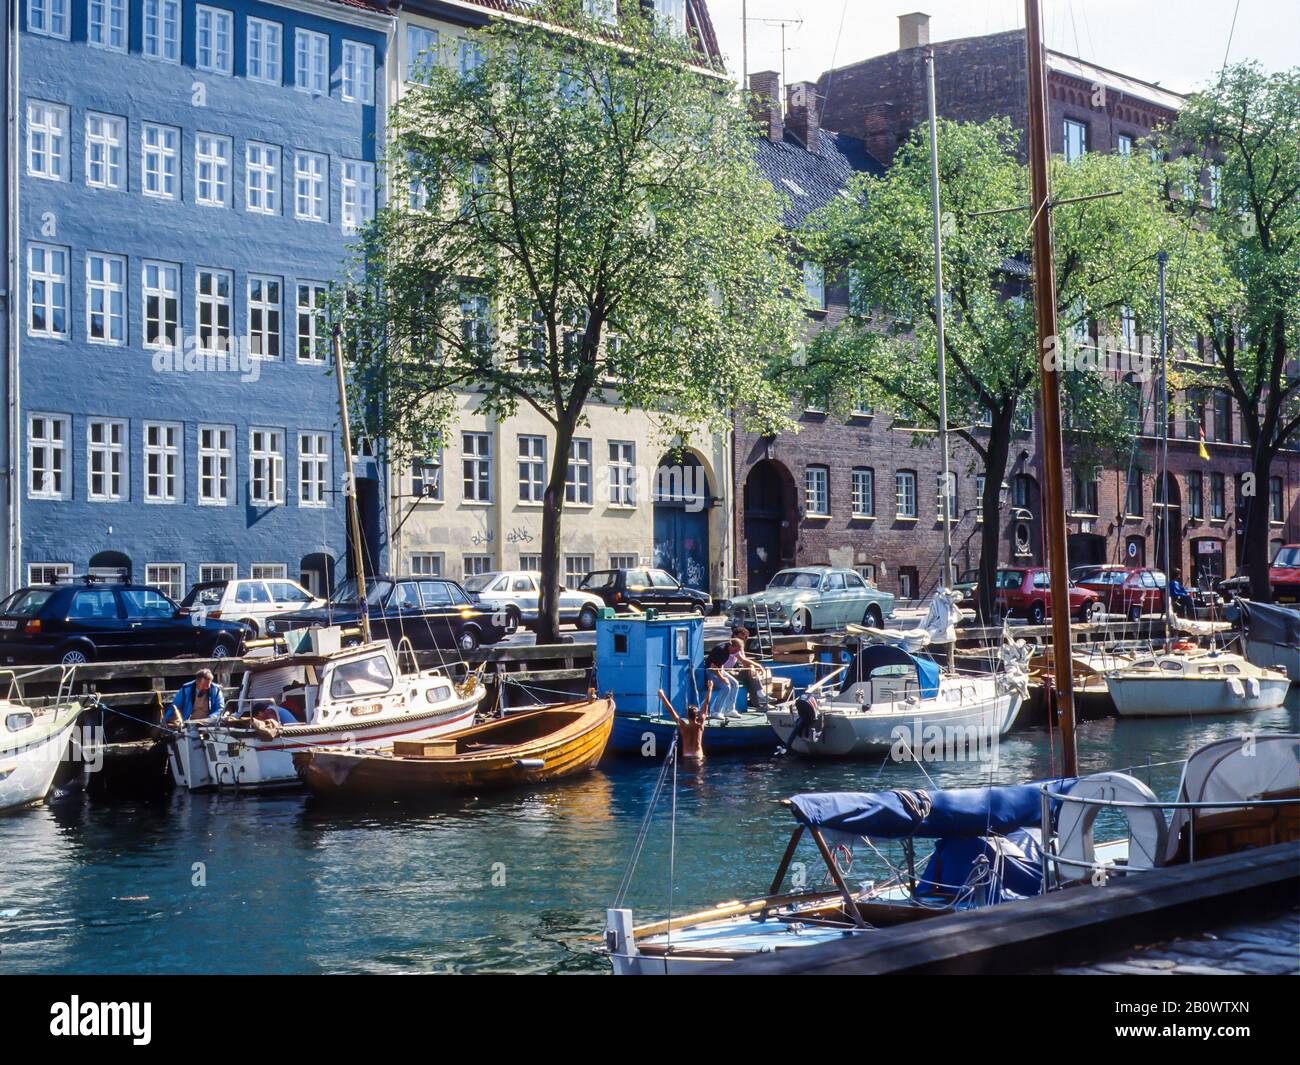 Christianshavn, Copenhagen, Denmark Stock Photo